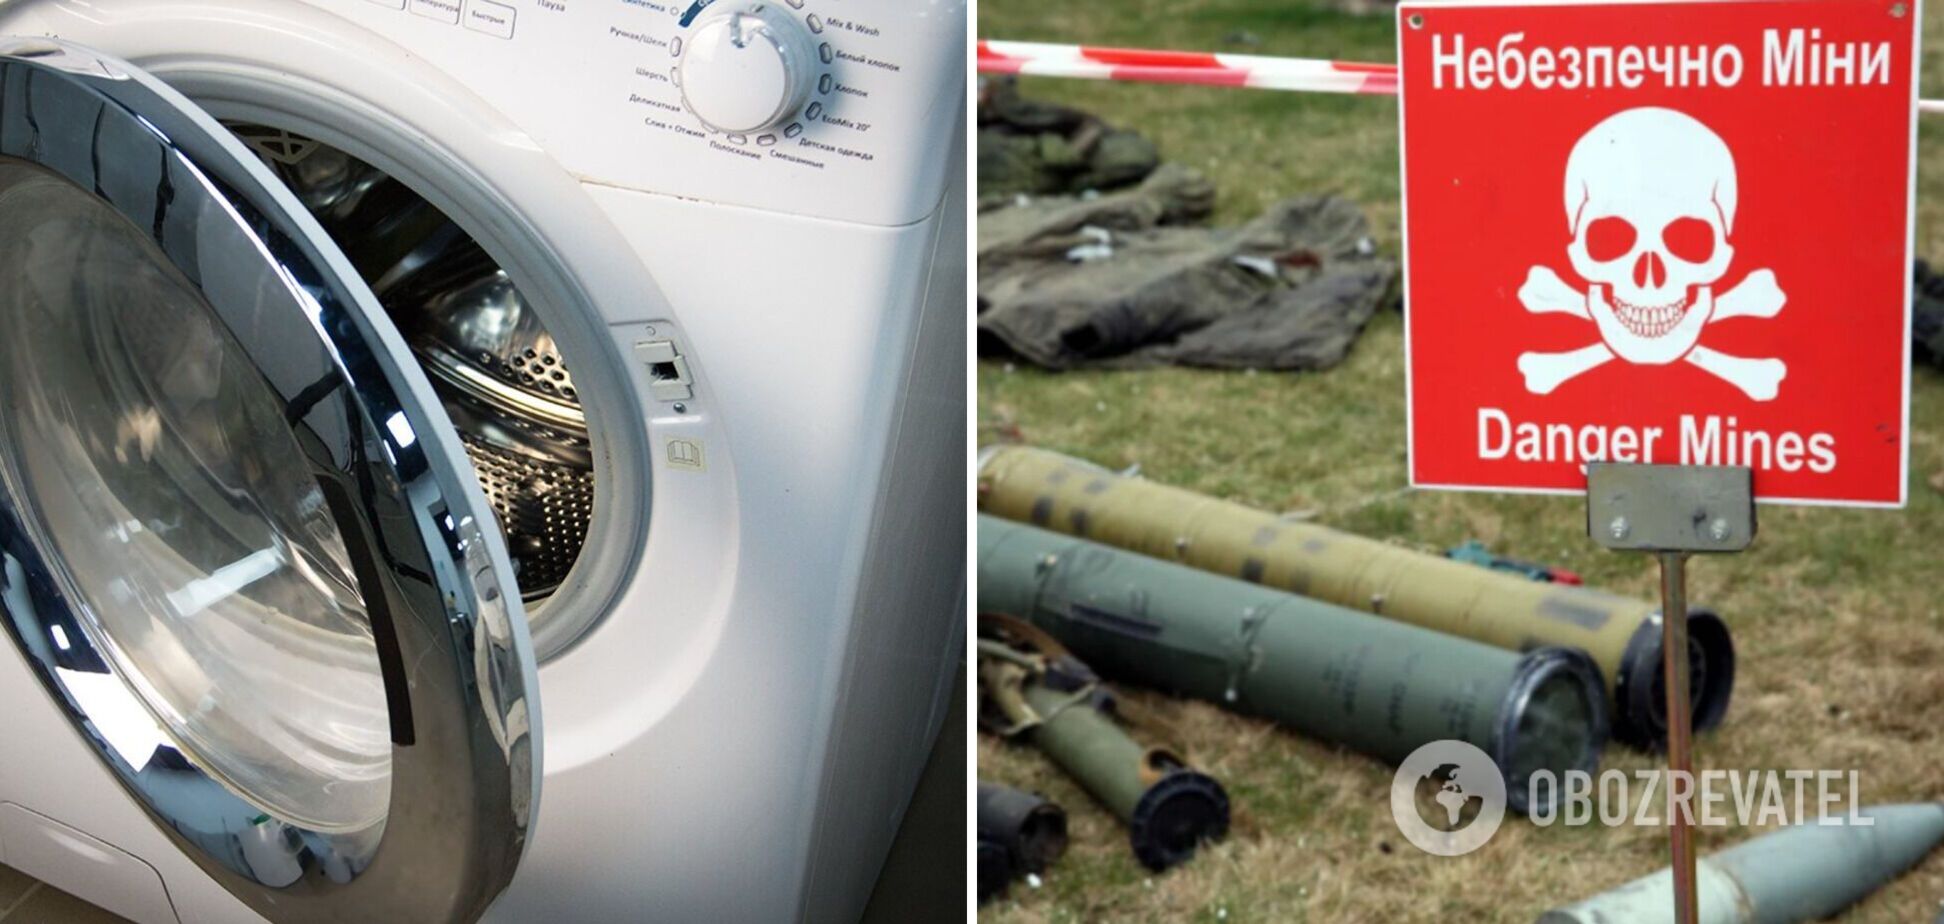 Российские оккупанты перед уходом минировали даже стиральные машины в домах украинцев. Видео